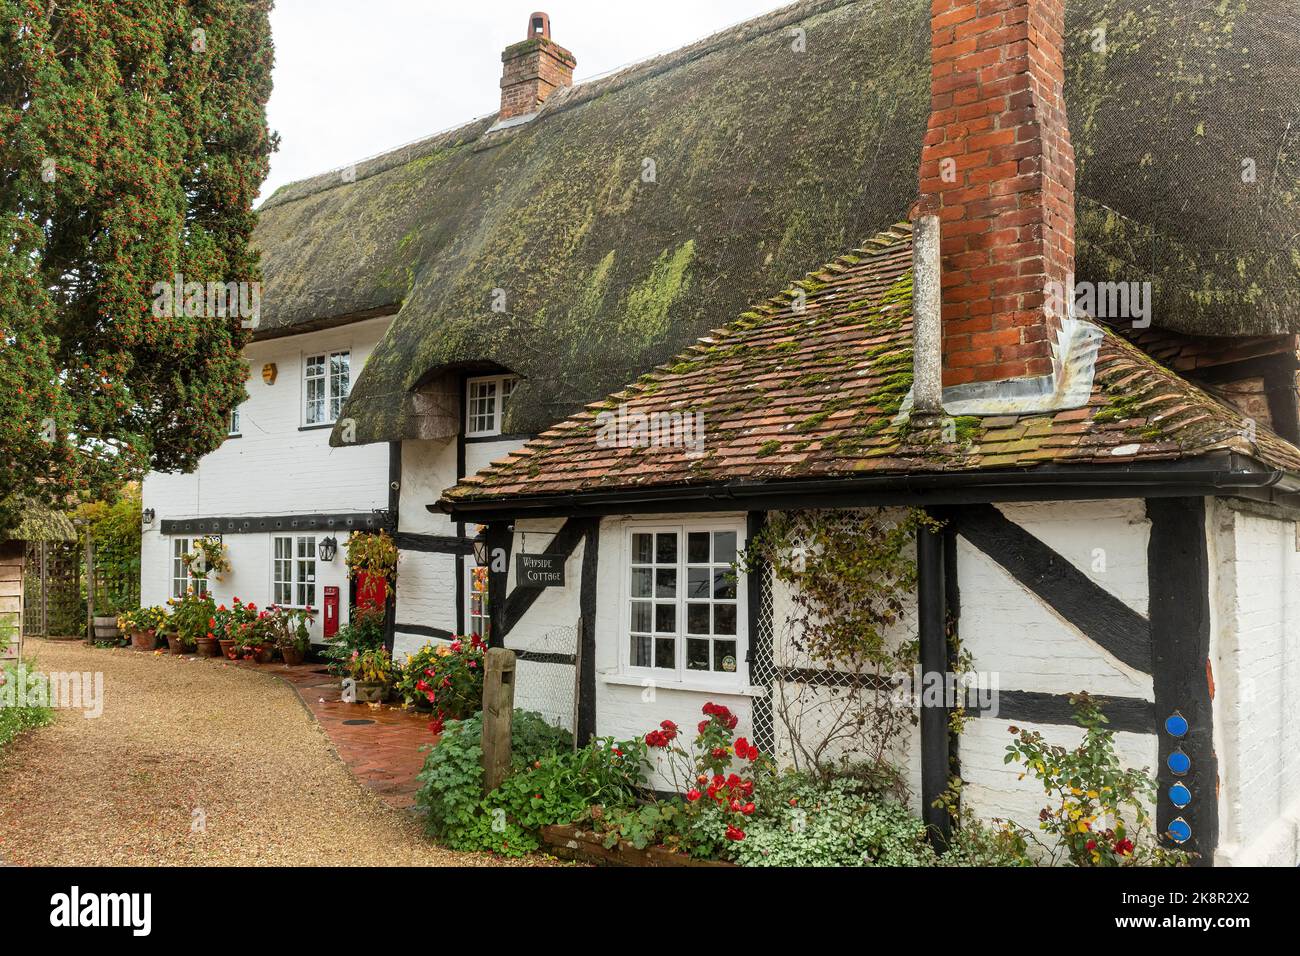 Maison de campagne en chaume dans le pittoresque village Hampshire d'Upton Gray, Angleterre, Royaume-Uni, pendant l'automne ou octobre Banque D'Images